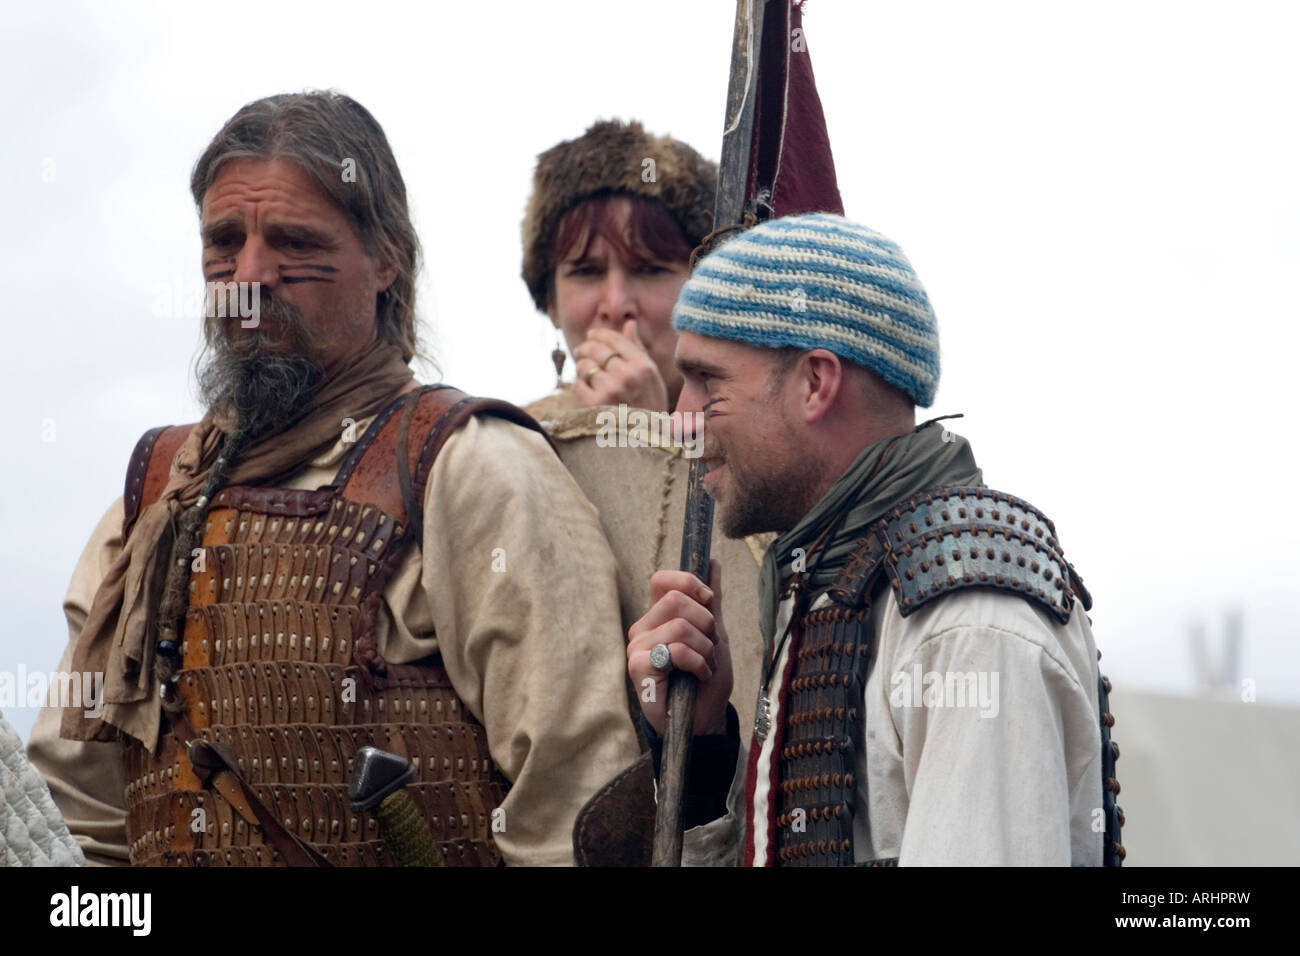 Drei Wikinger-Krieger auf einem Reenactment-Festival in Dänemark Stockfoto